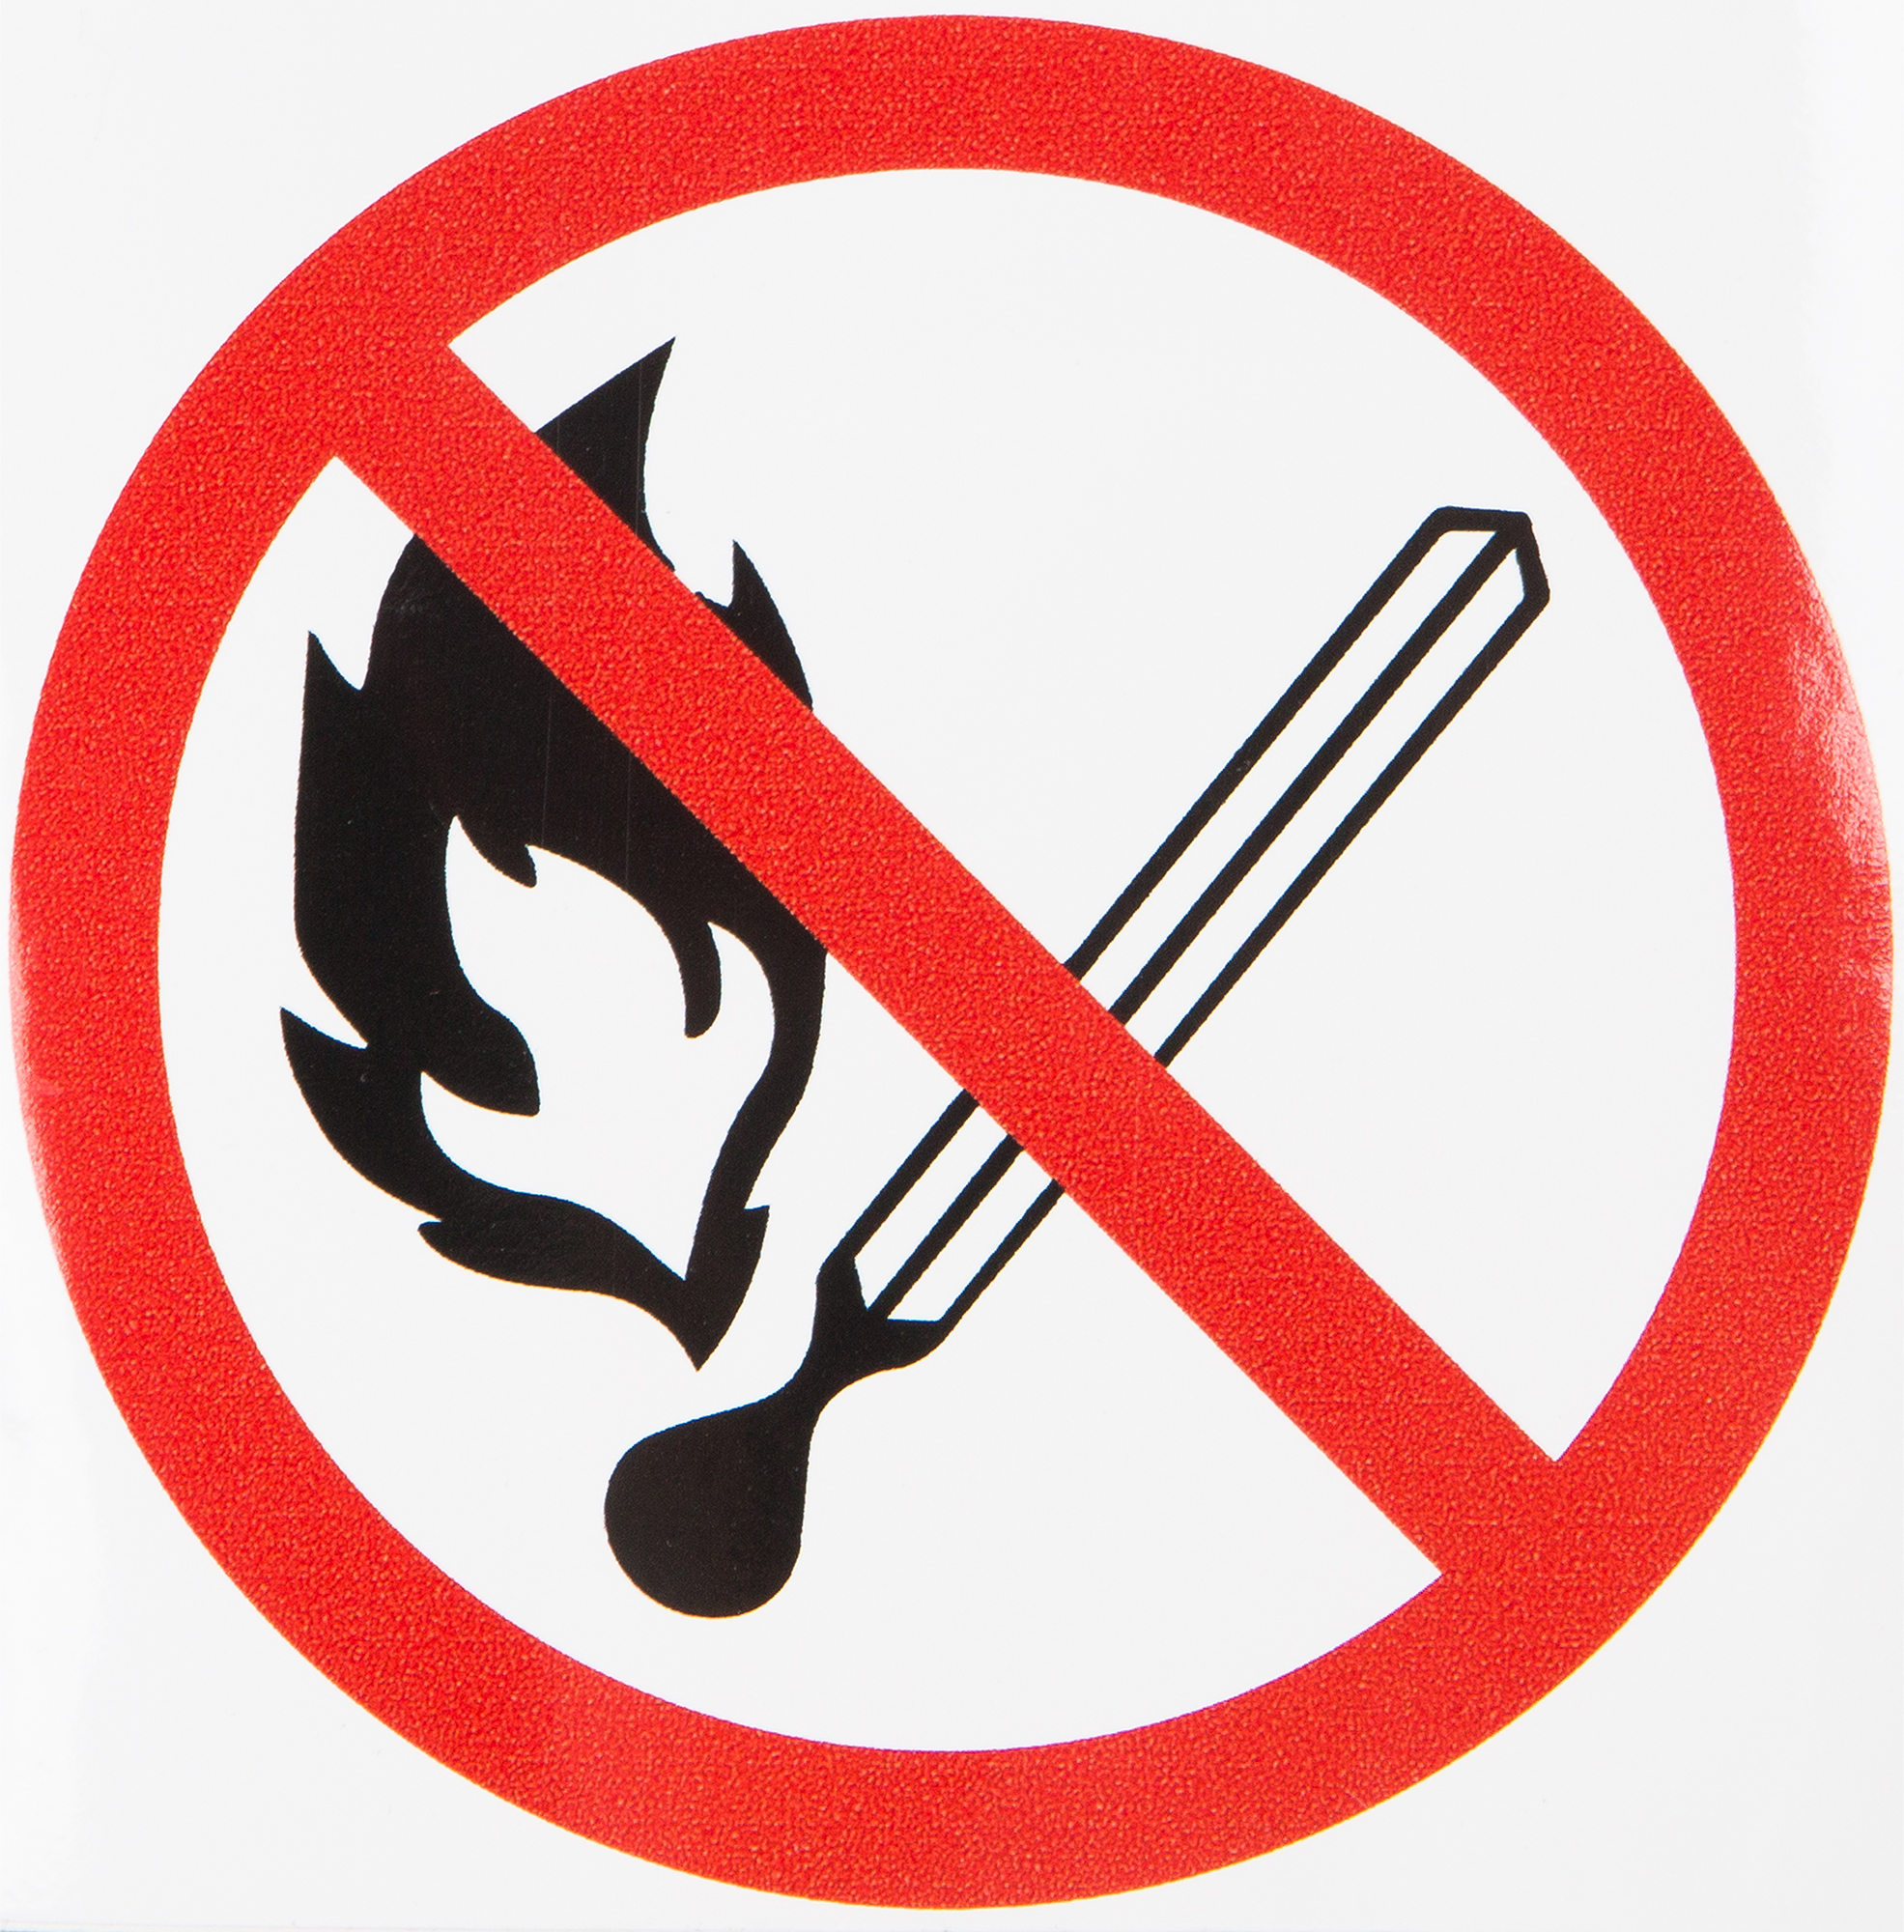 Знак запрещается пользоваться открытым огнем. Знак запрещено пользоваться открытым огнем и курить. Знак разведение открытого огня запрещено. "Запрещается курить", "запрещается пользоваться открытым огнем".. Запрет в жилых помещениях